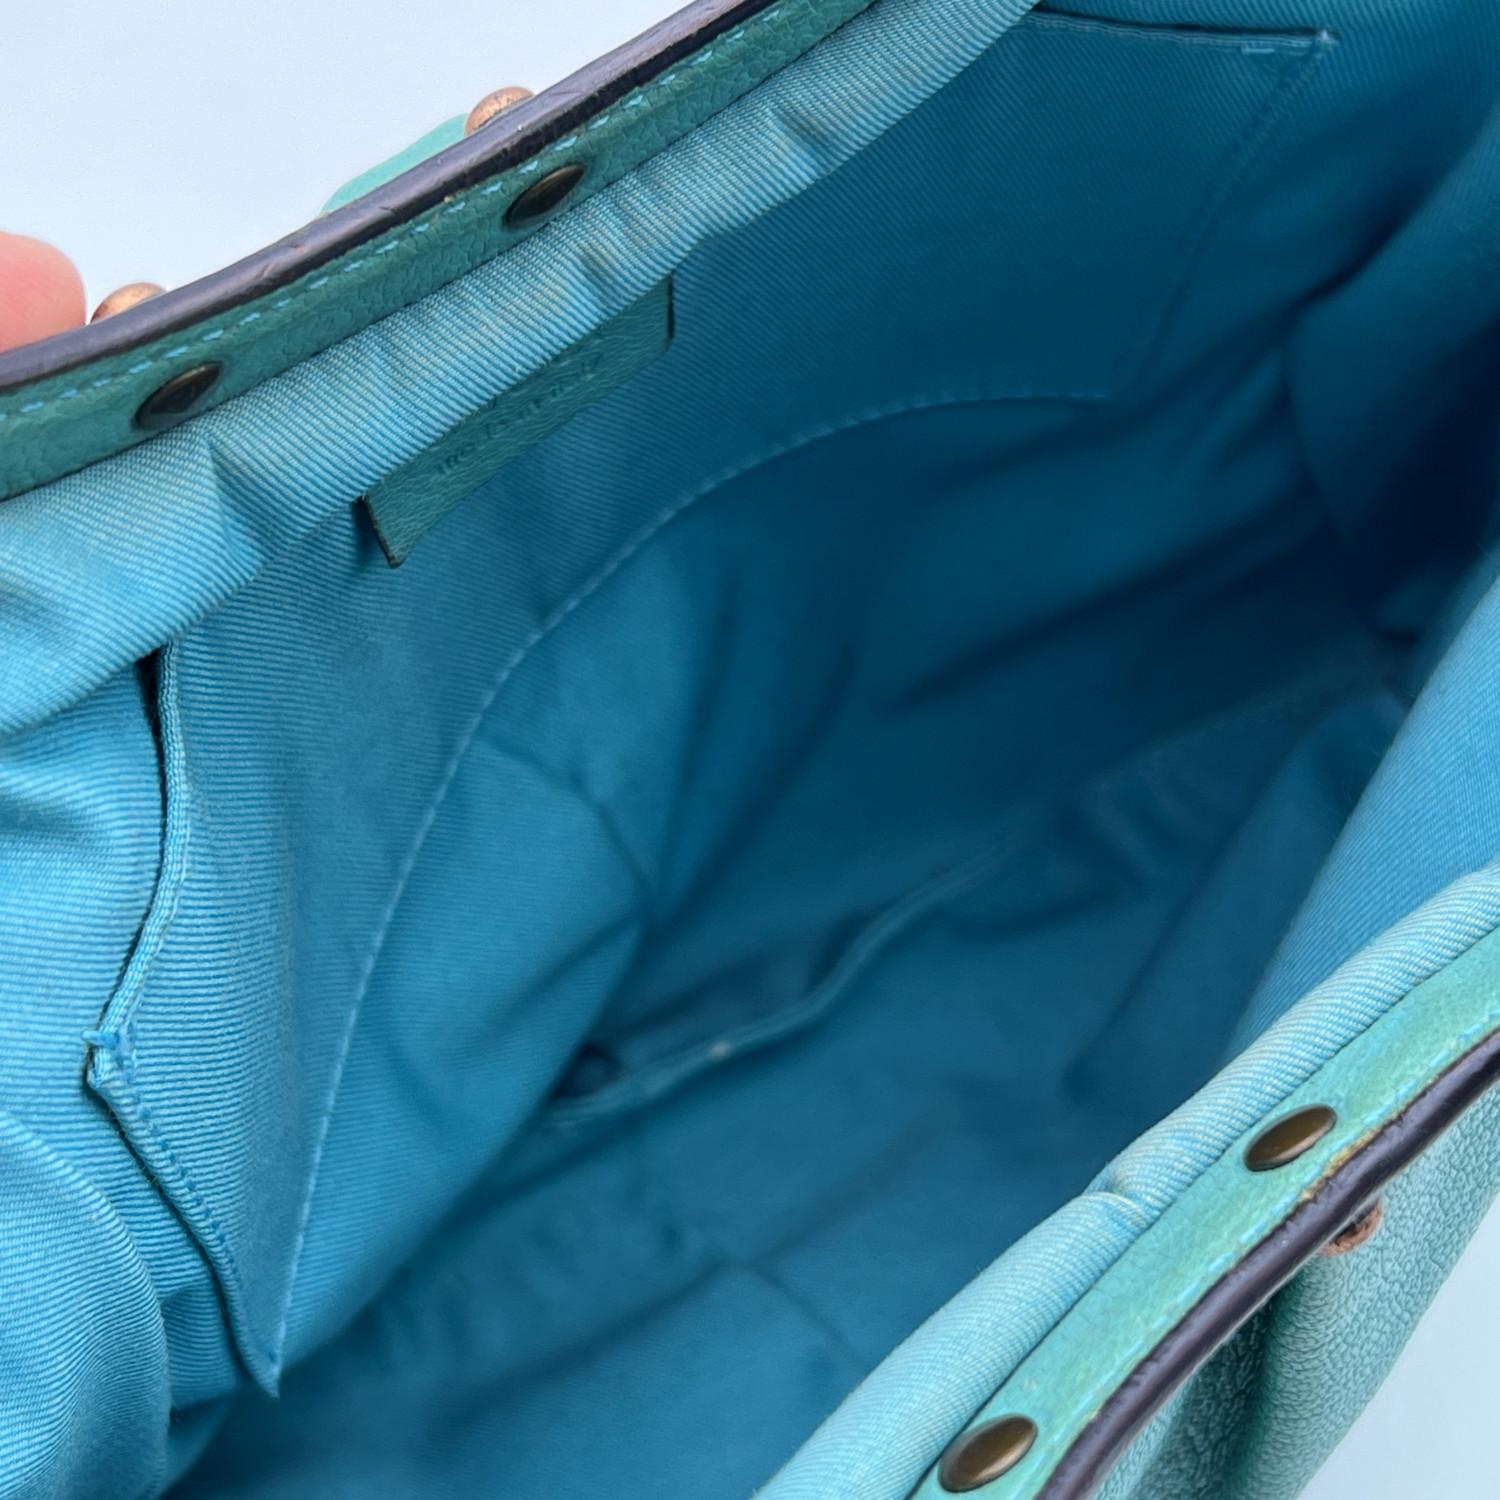 Gucci Turquoise Leather Bamboo Studded Handbag Hobo Bag For Sale 1